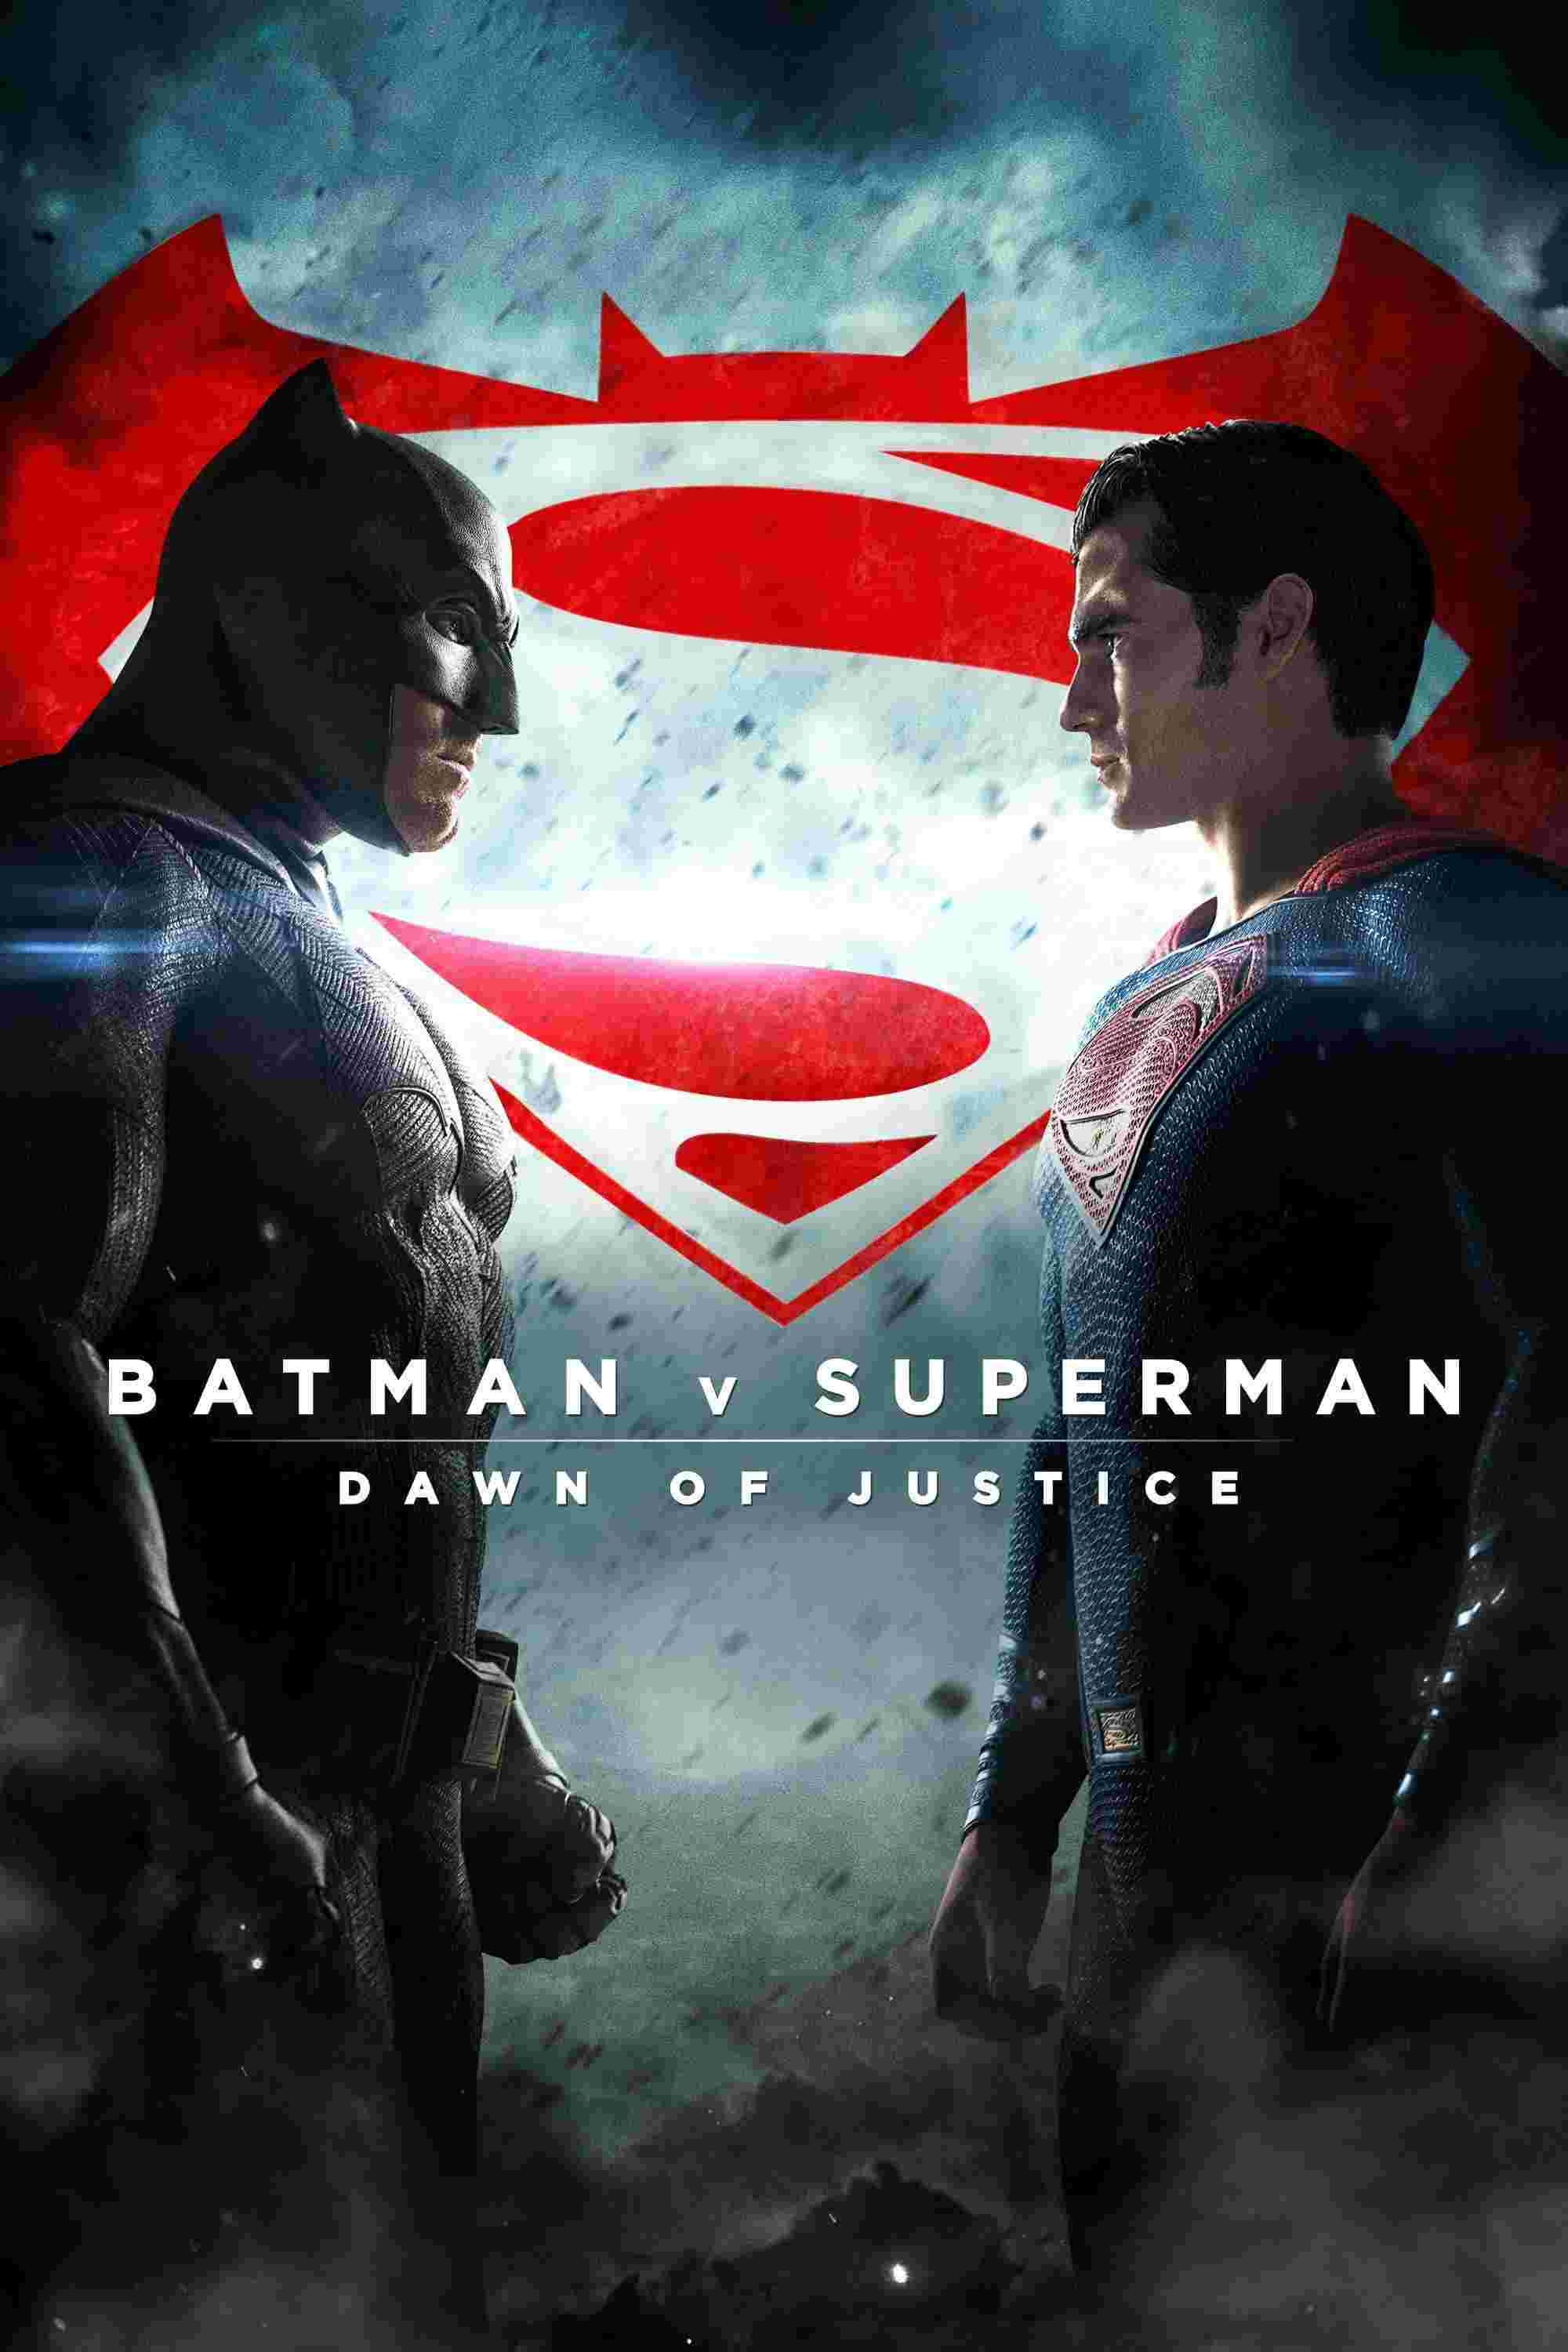 Batman v Superman: Dawn of Justice (2016) Ben Affleck